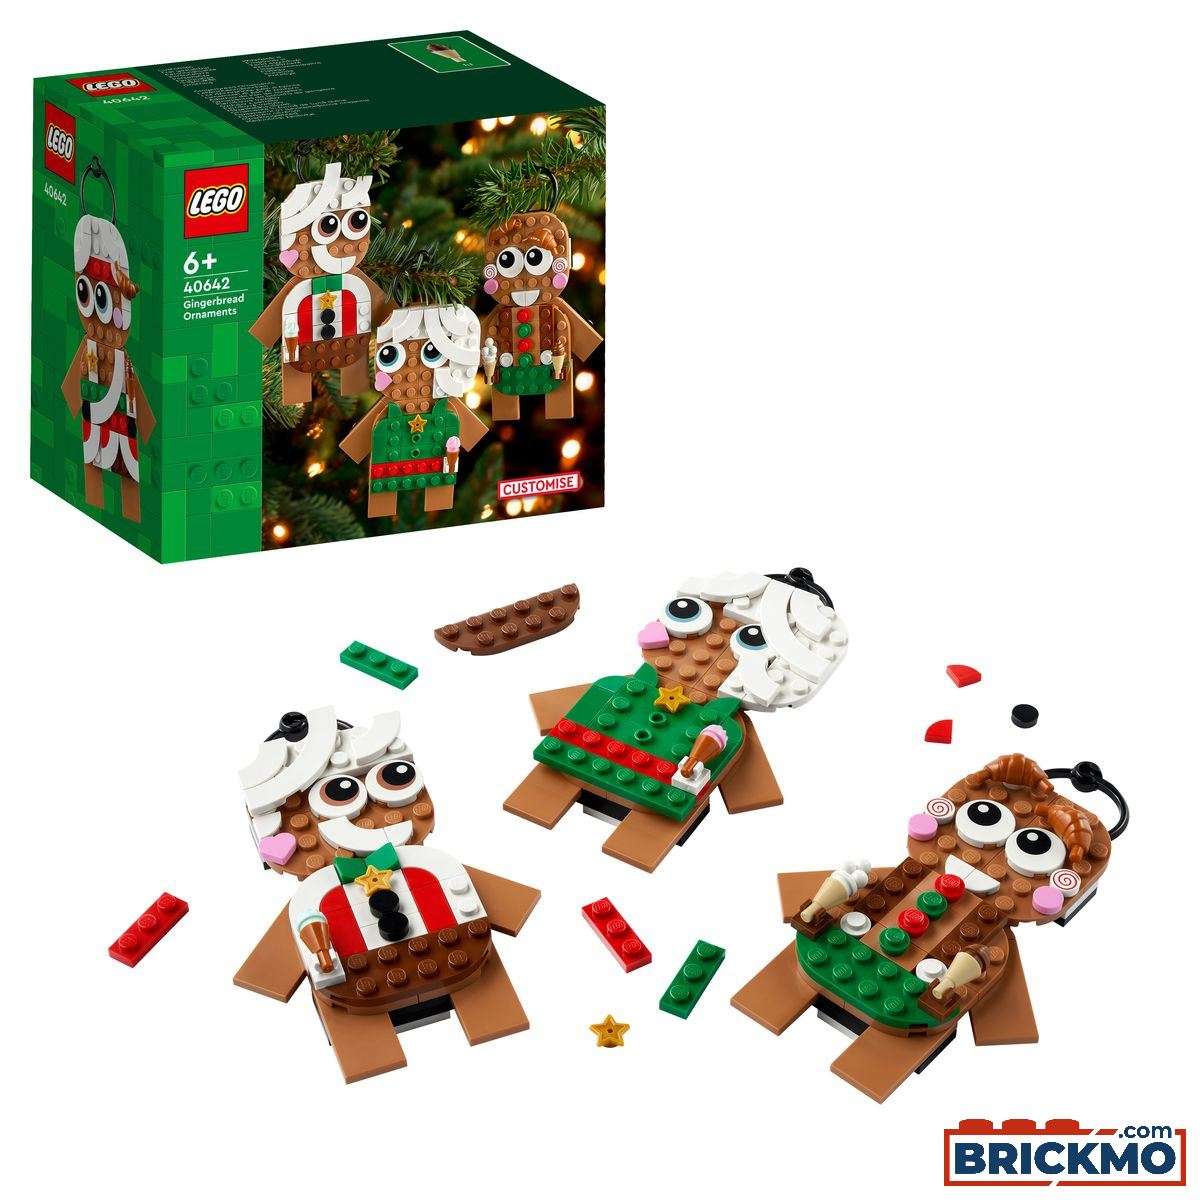 LEGO 40642 Gingerbread Ornaments 40642